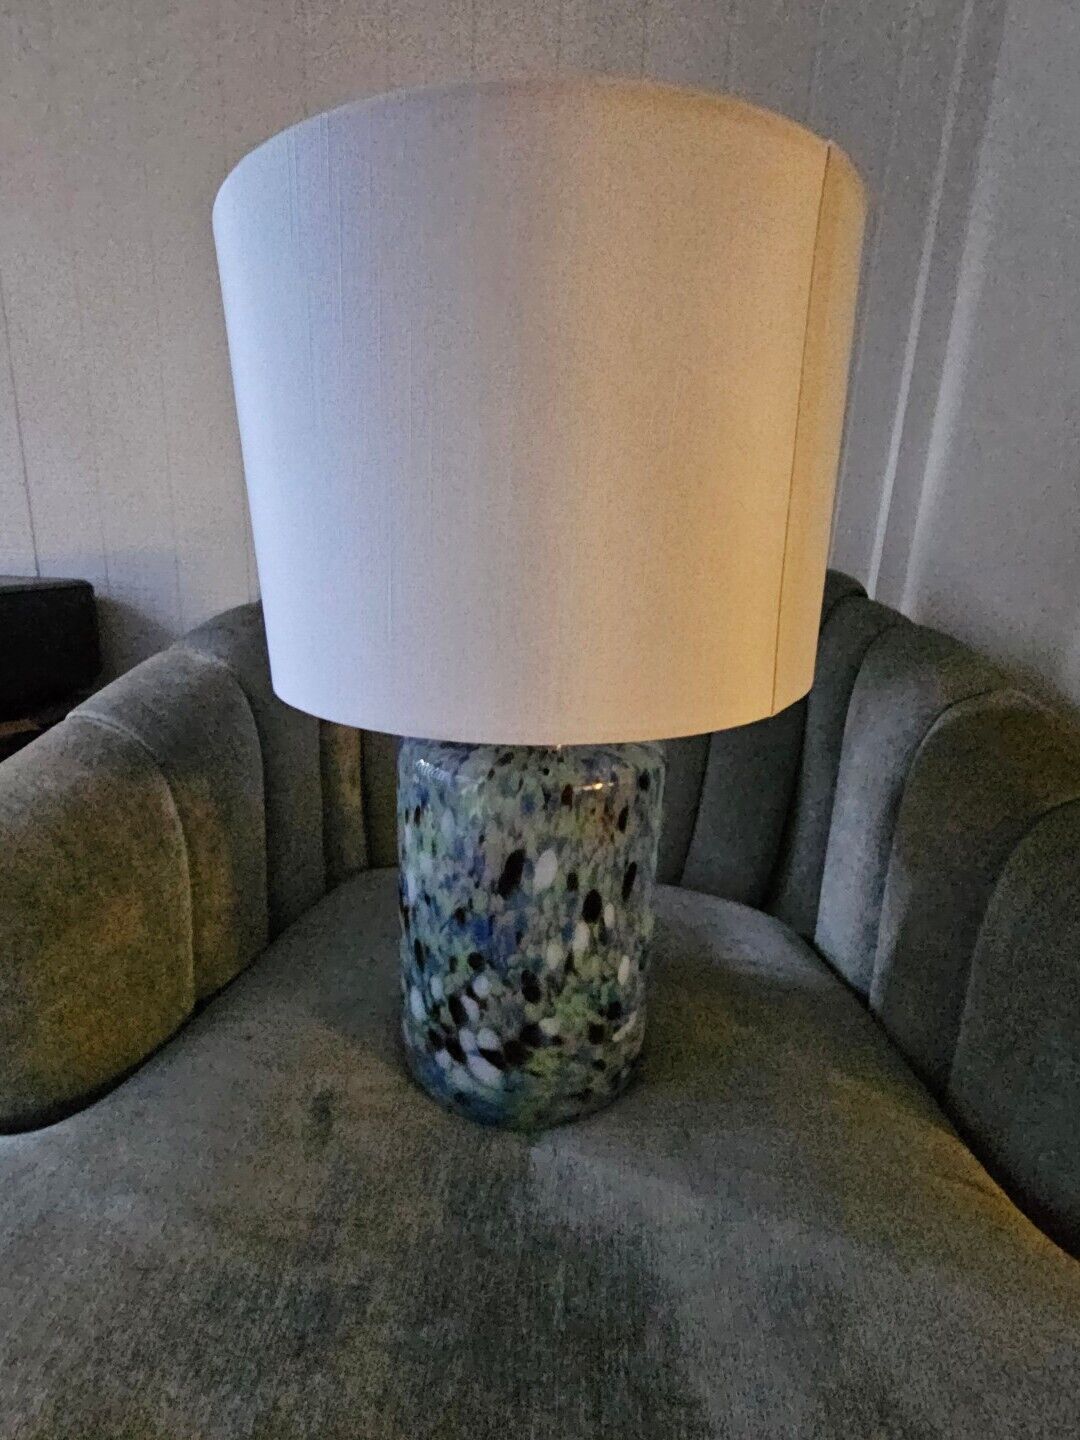 DVF Diane Von Furstenberg x Target Dot Glass Cylinder Accent Table Lamp